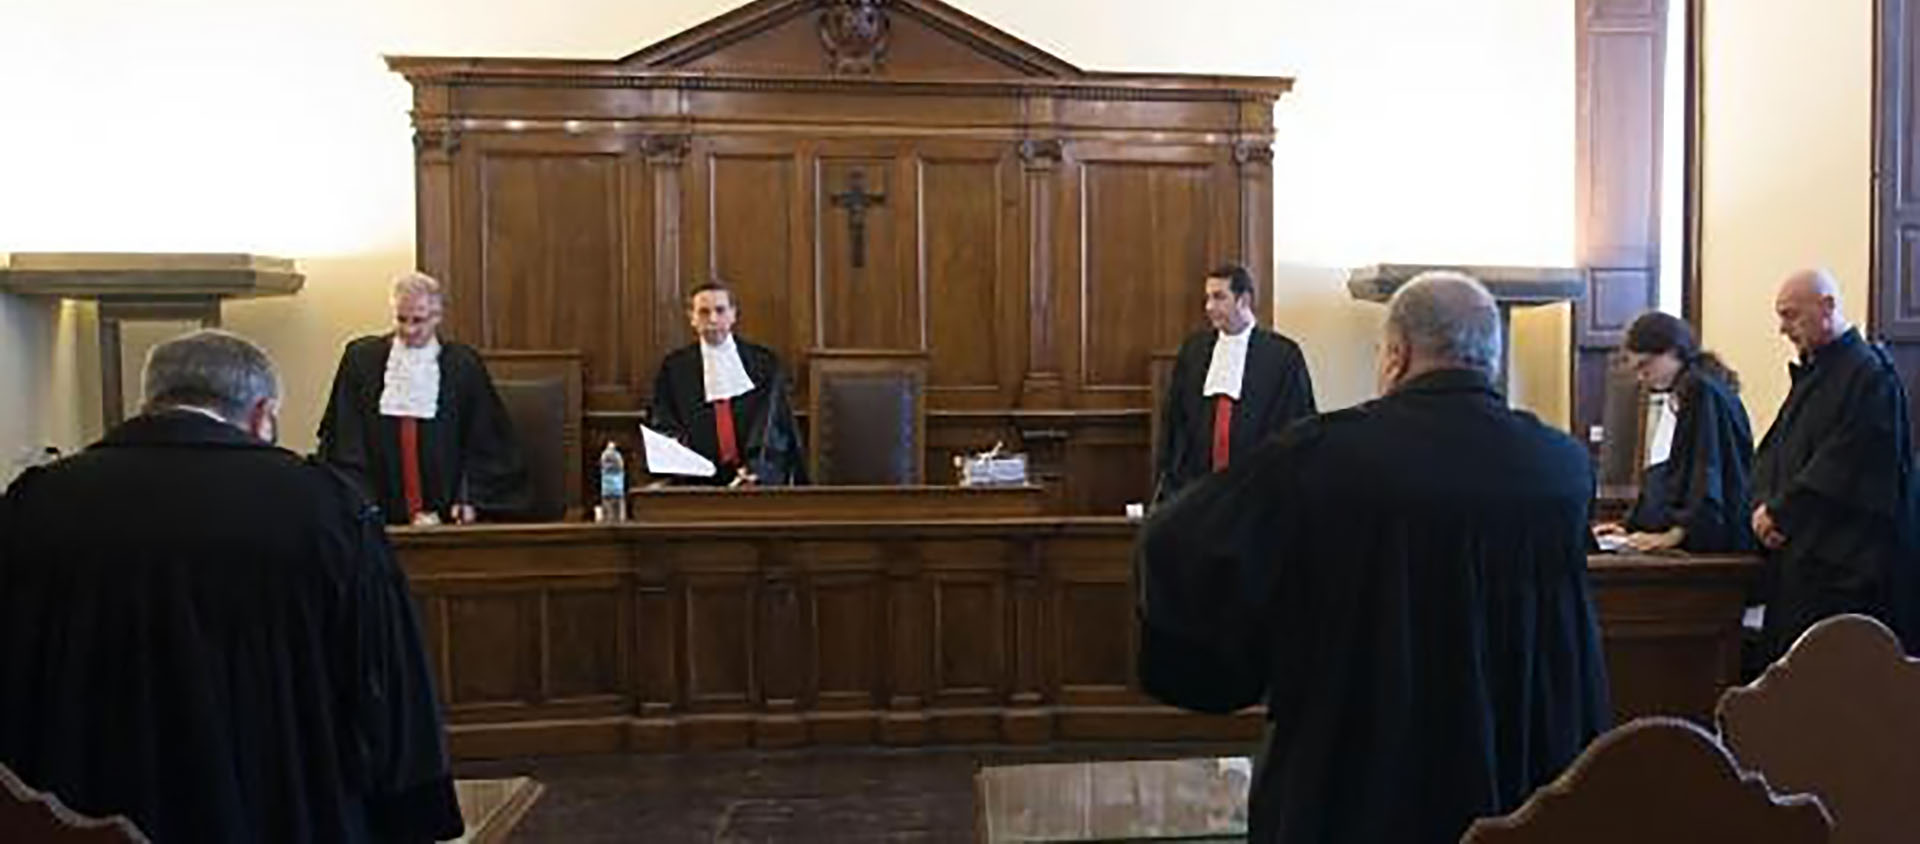 Kamil Jarzembowski, témoin clé de l’affaire, a témoigné contre Gabriele Martinelli | © Vatican Media